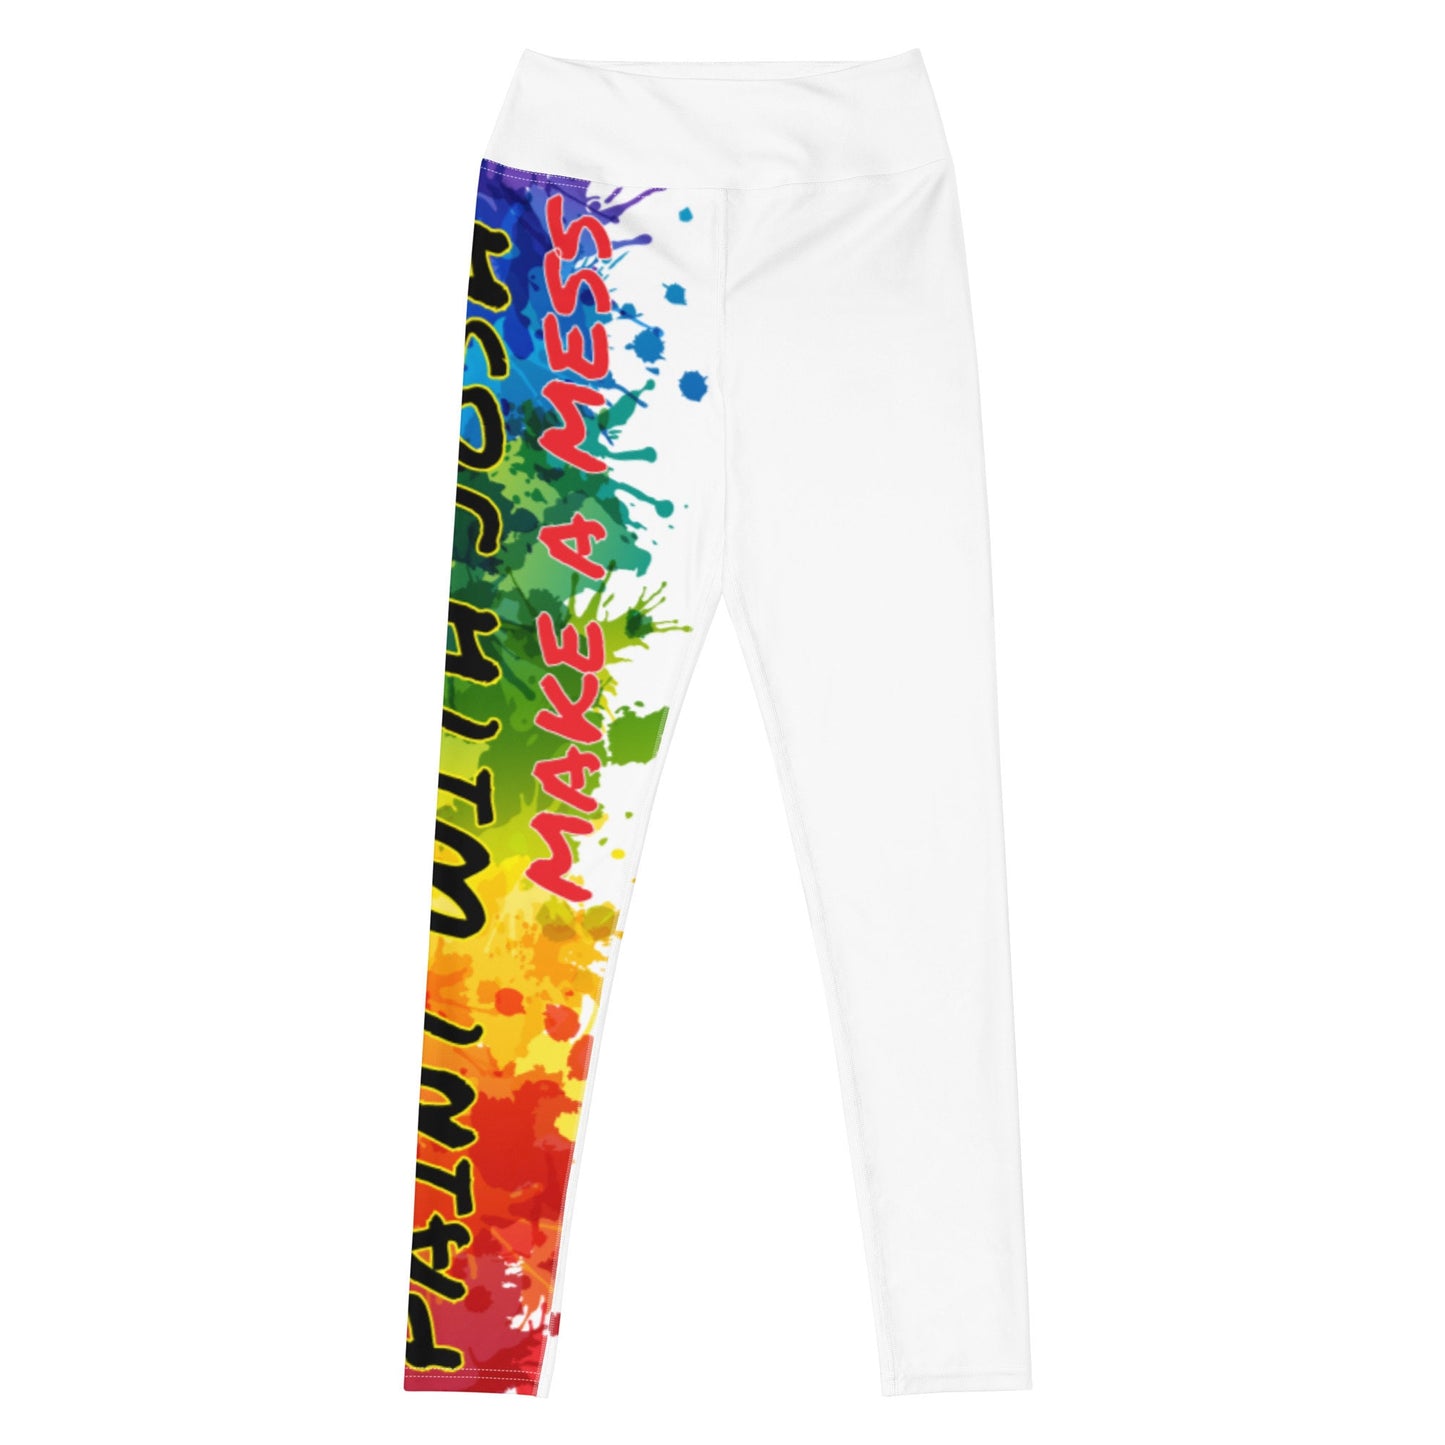 Clothing - Paint With Josh Yoga Leggings - White + Splatter Logo